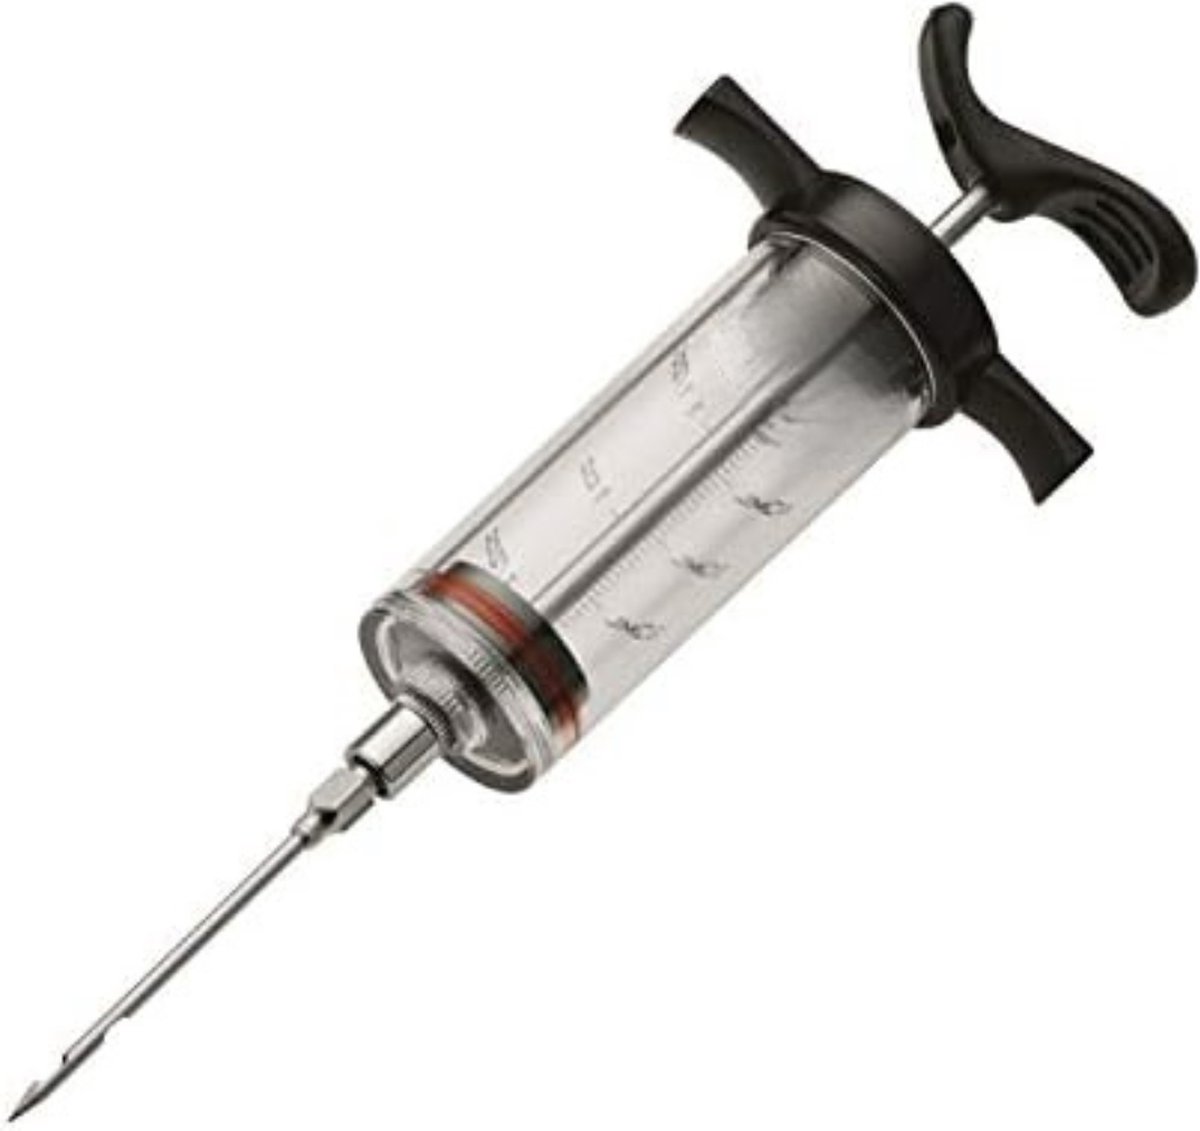 Gratyfied- Marinade Injectiespuit- Marinade Injector